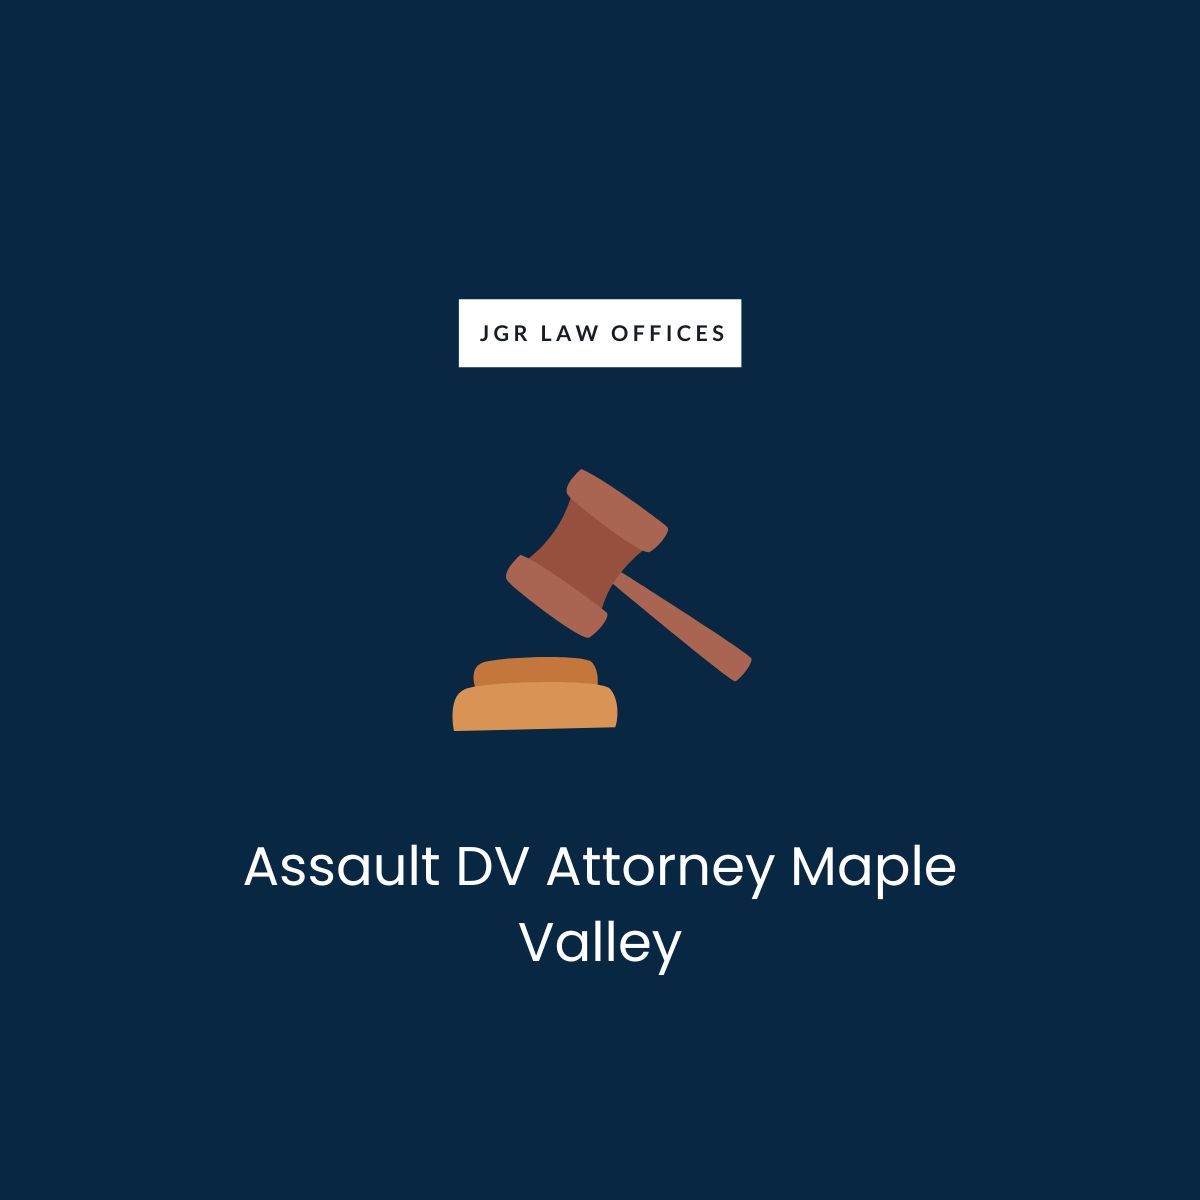 Assault DV Lawyer Maple Valley Assault DV